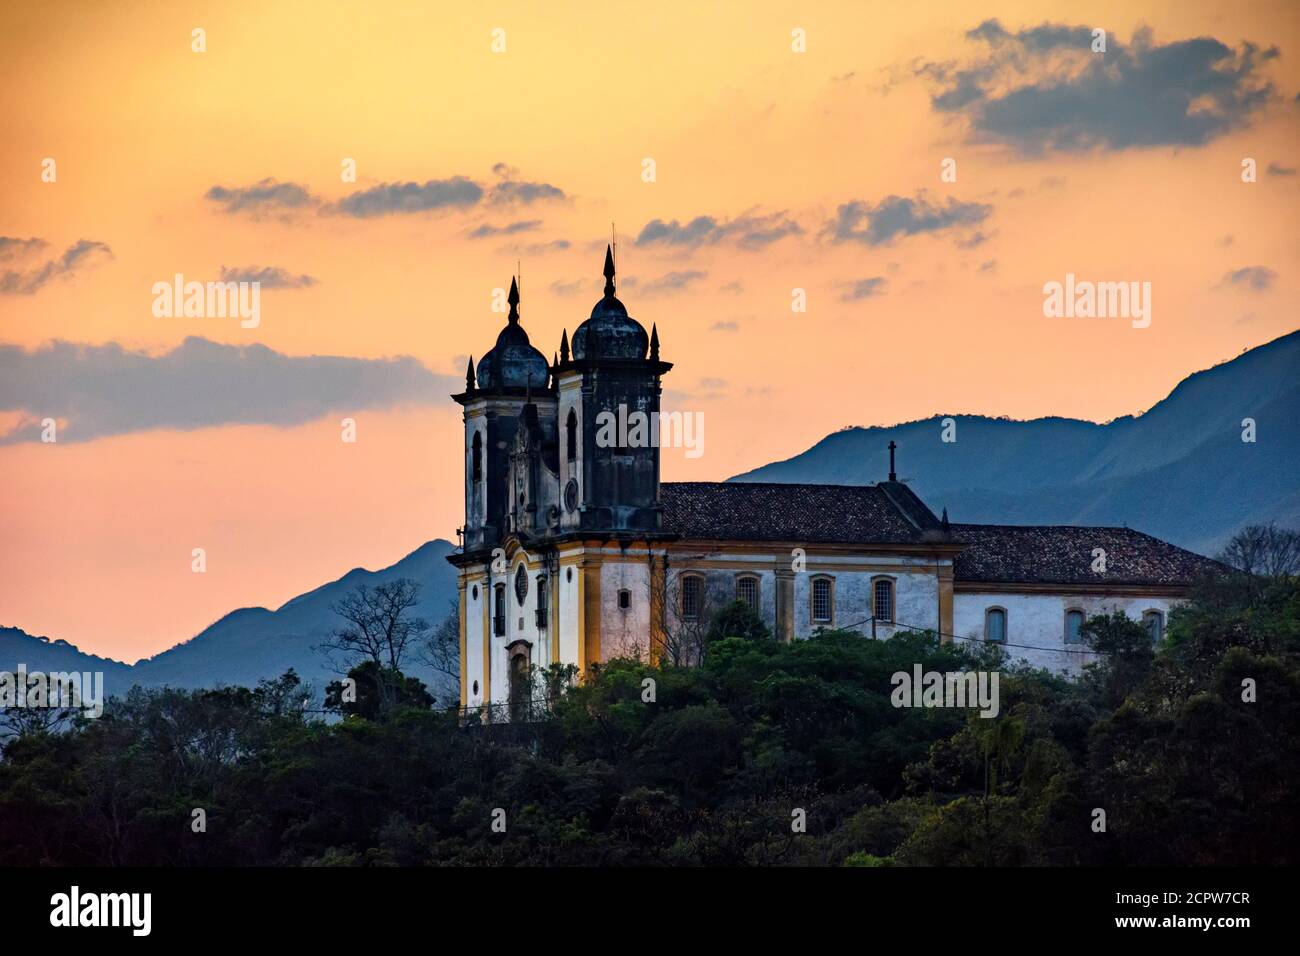 Ancienne église historique au sommet de la colline au coucher du soleil dans la ville d'Ouro Preto à Minas Gerais, Brésil avec les montagnes derrière Banque D'Images